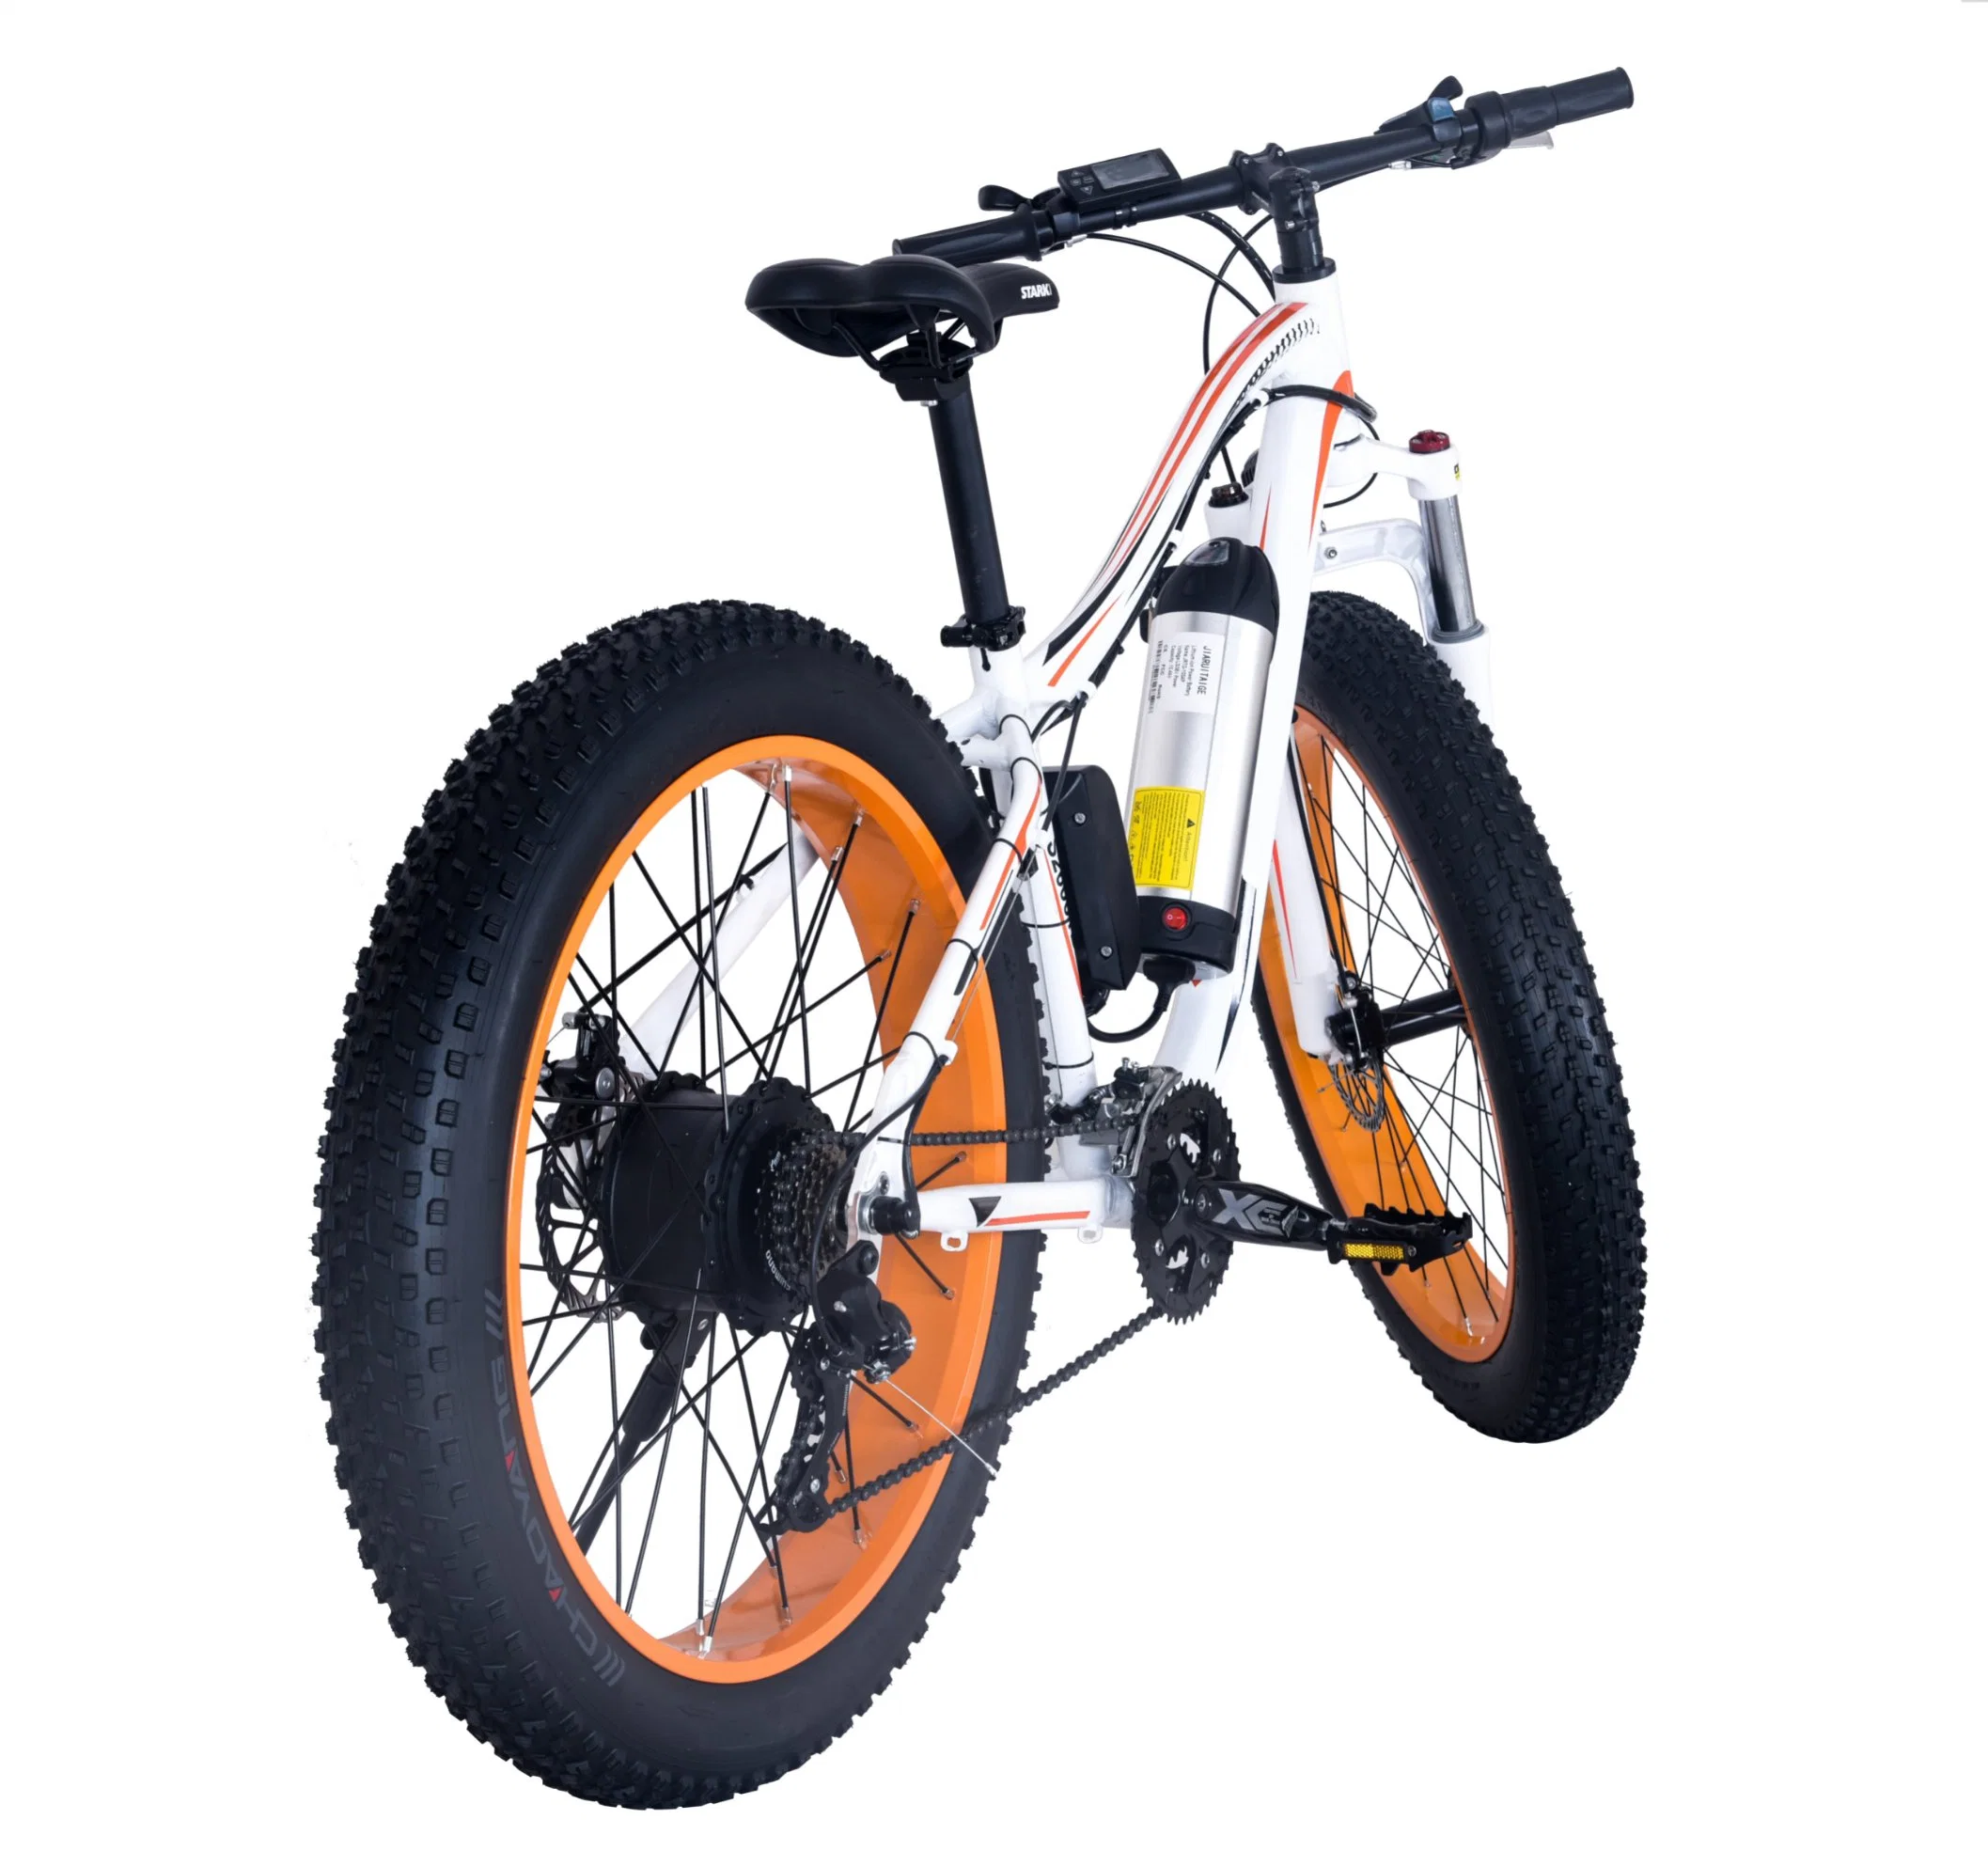 36V10.4ah/48V13ah 350 Вт, 750 Вт цикла электрического заряда аккумулятора на велосипеде ATV велосипед со светодиодной подсветкой для взрослых